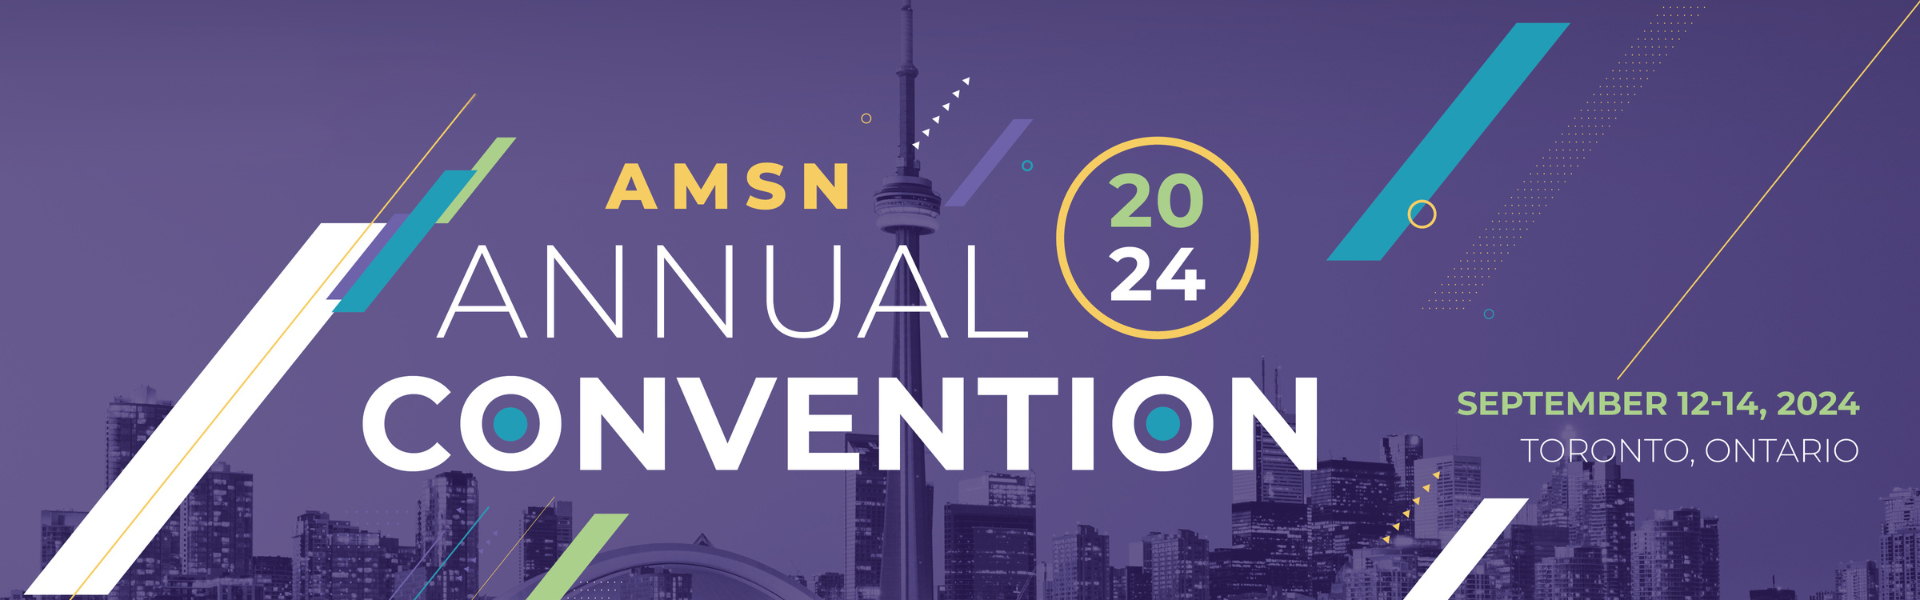 AMSN Annual Convention